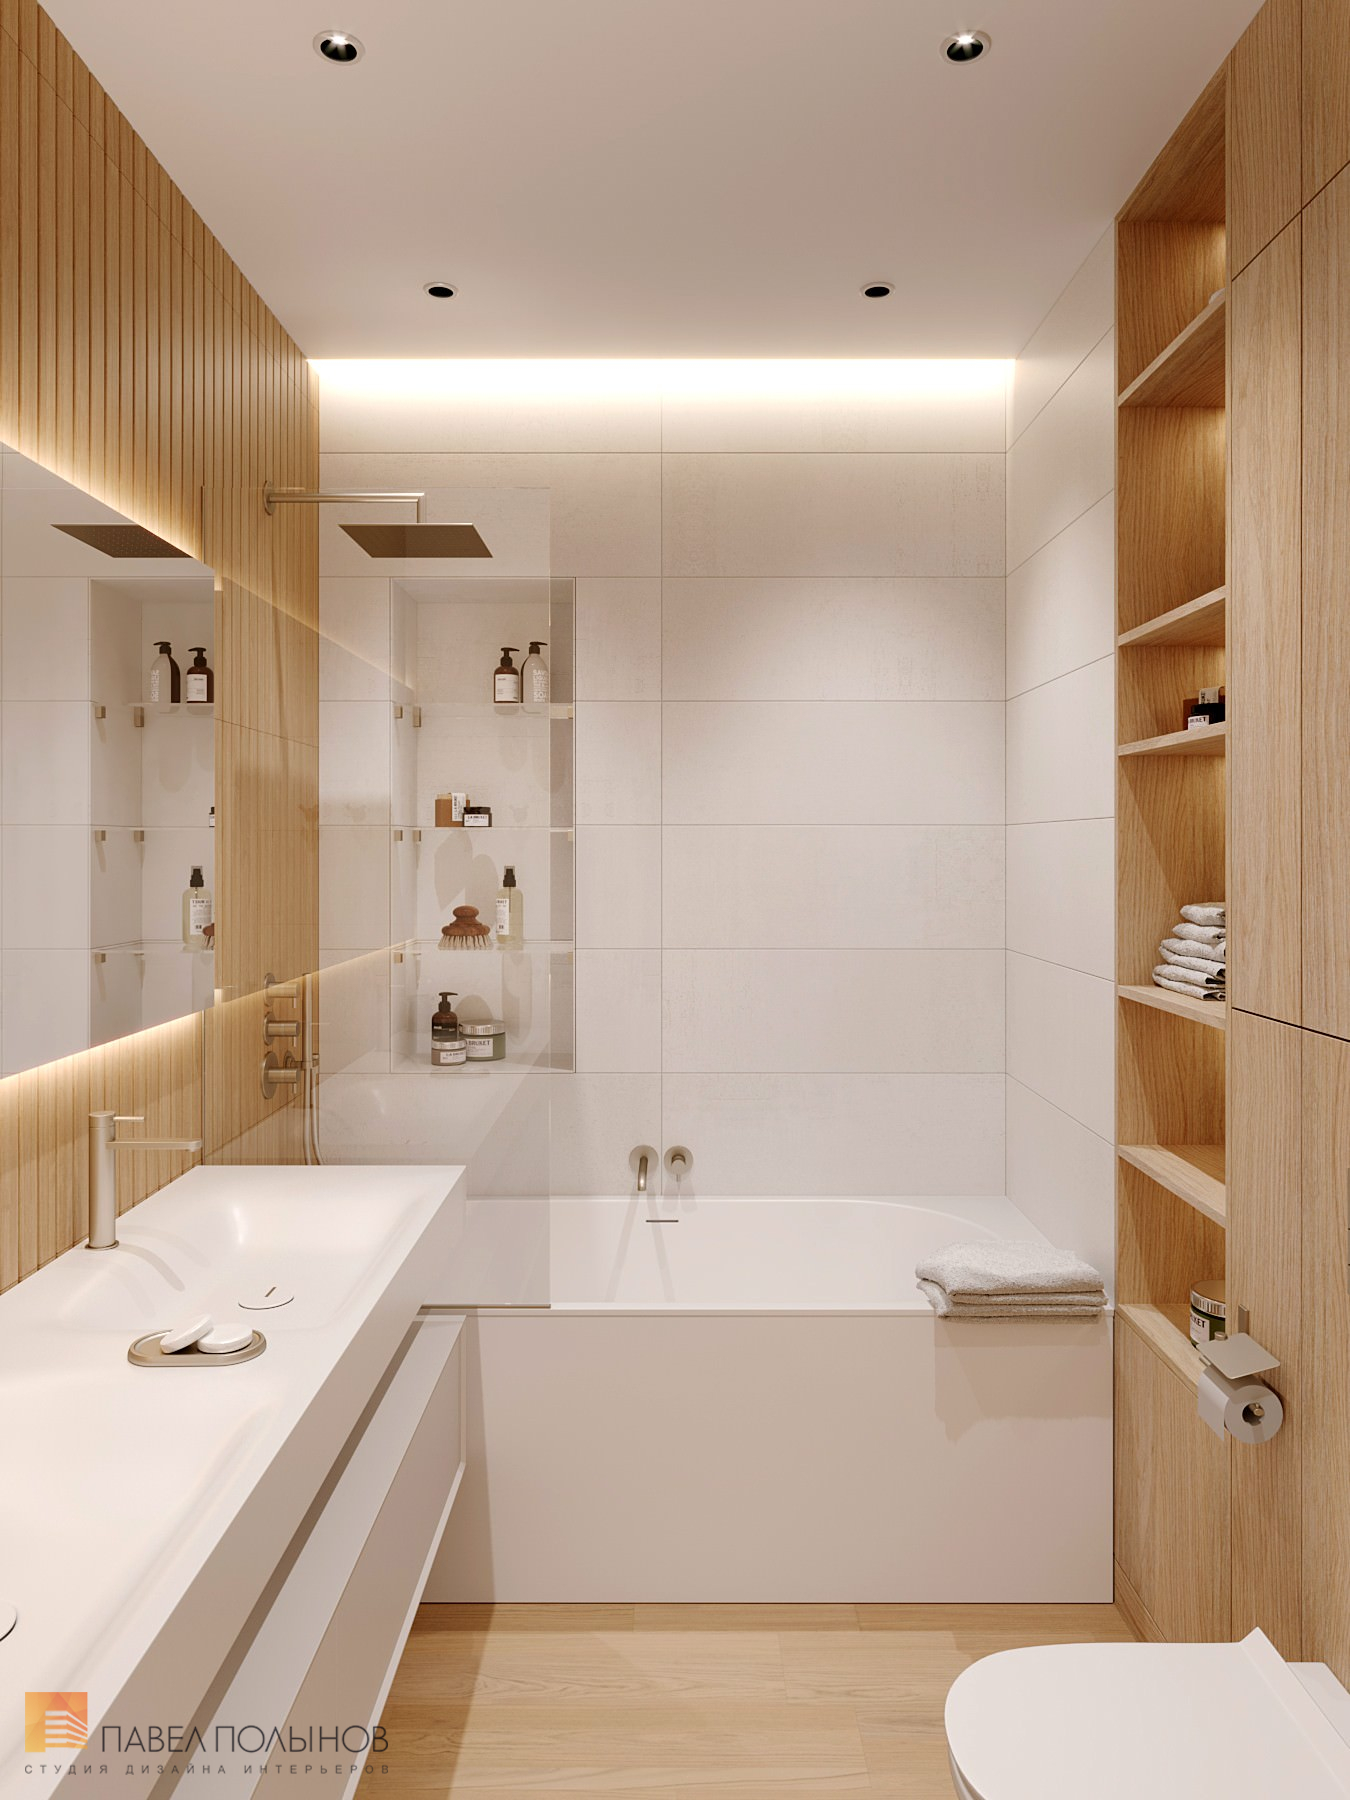 Фото дизайн ванной комнаты из проекта «Квартира в современном стиле, ЖК «Дом на Зелейной», 142 кв.м.»